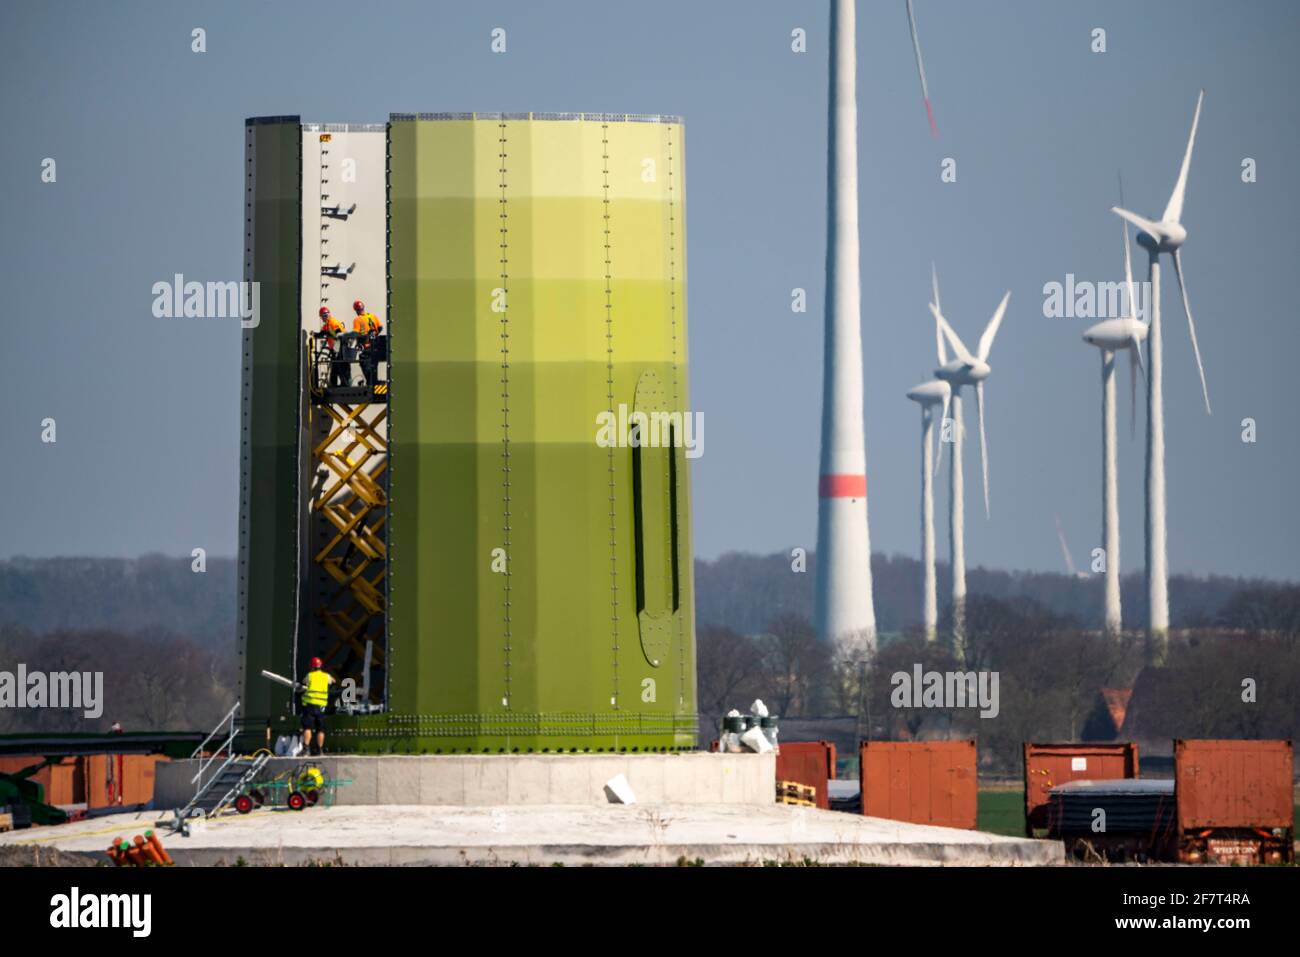 Construction of a wind turbine, steel pillar by Enercon, near Kerken, Kleve district, on the Lower Rhine, NRW, Germany, Stock Photo